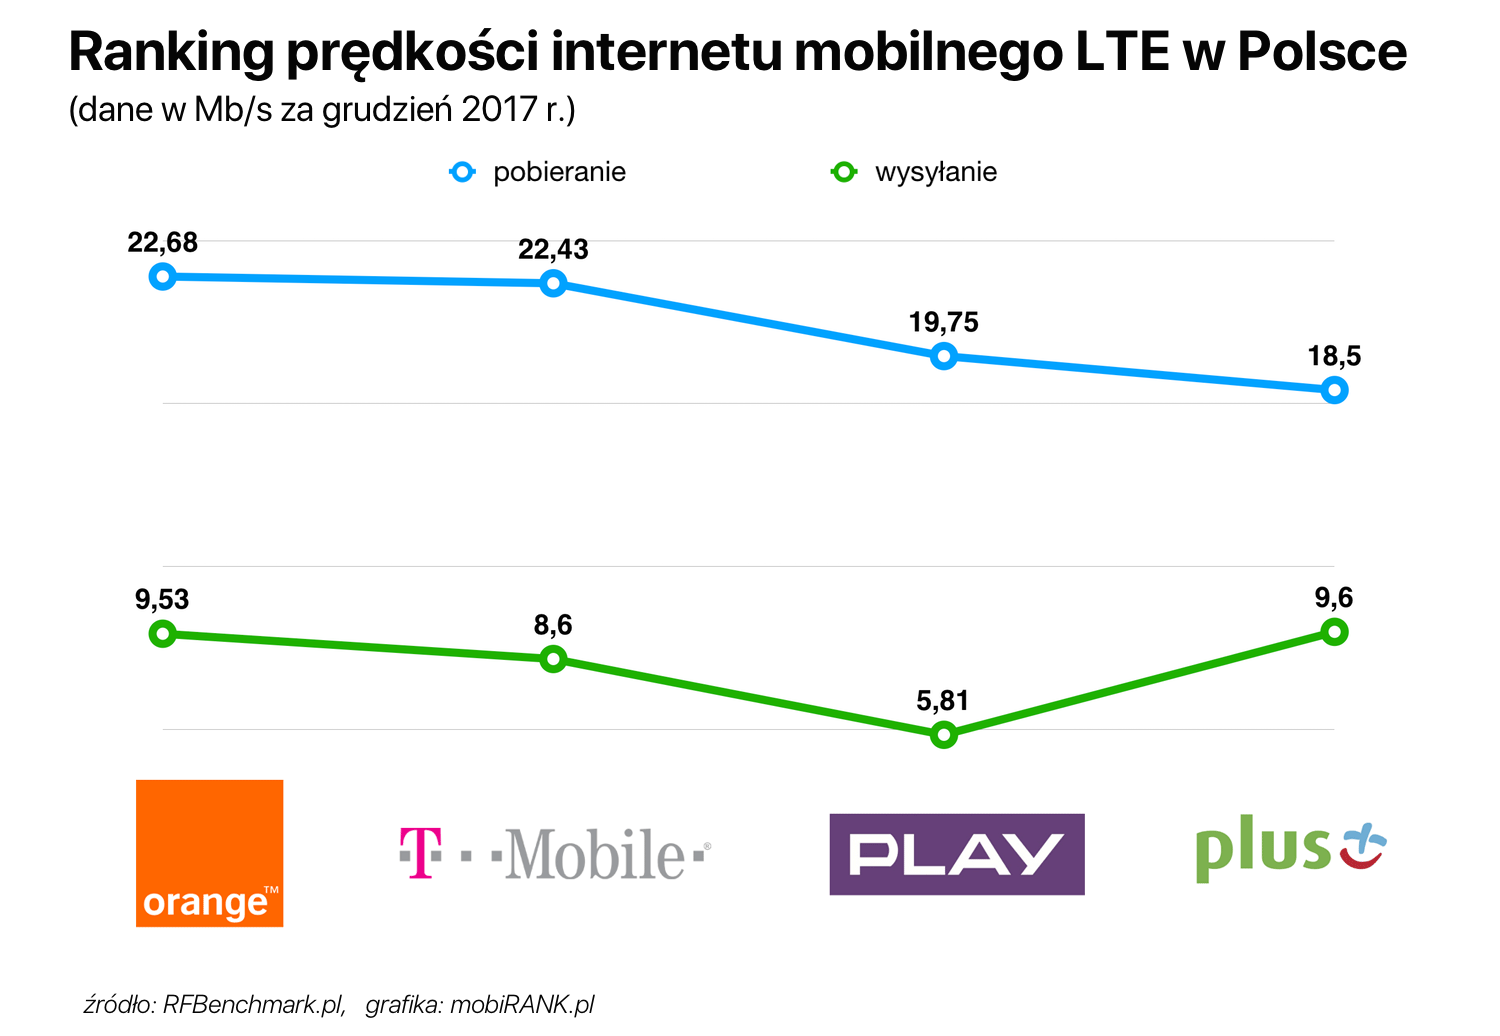 Ranking prędkości internetu mobilnego LTE w Polsce (grudzień 2017)